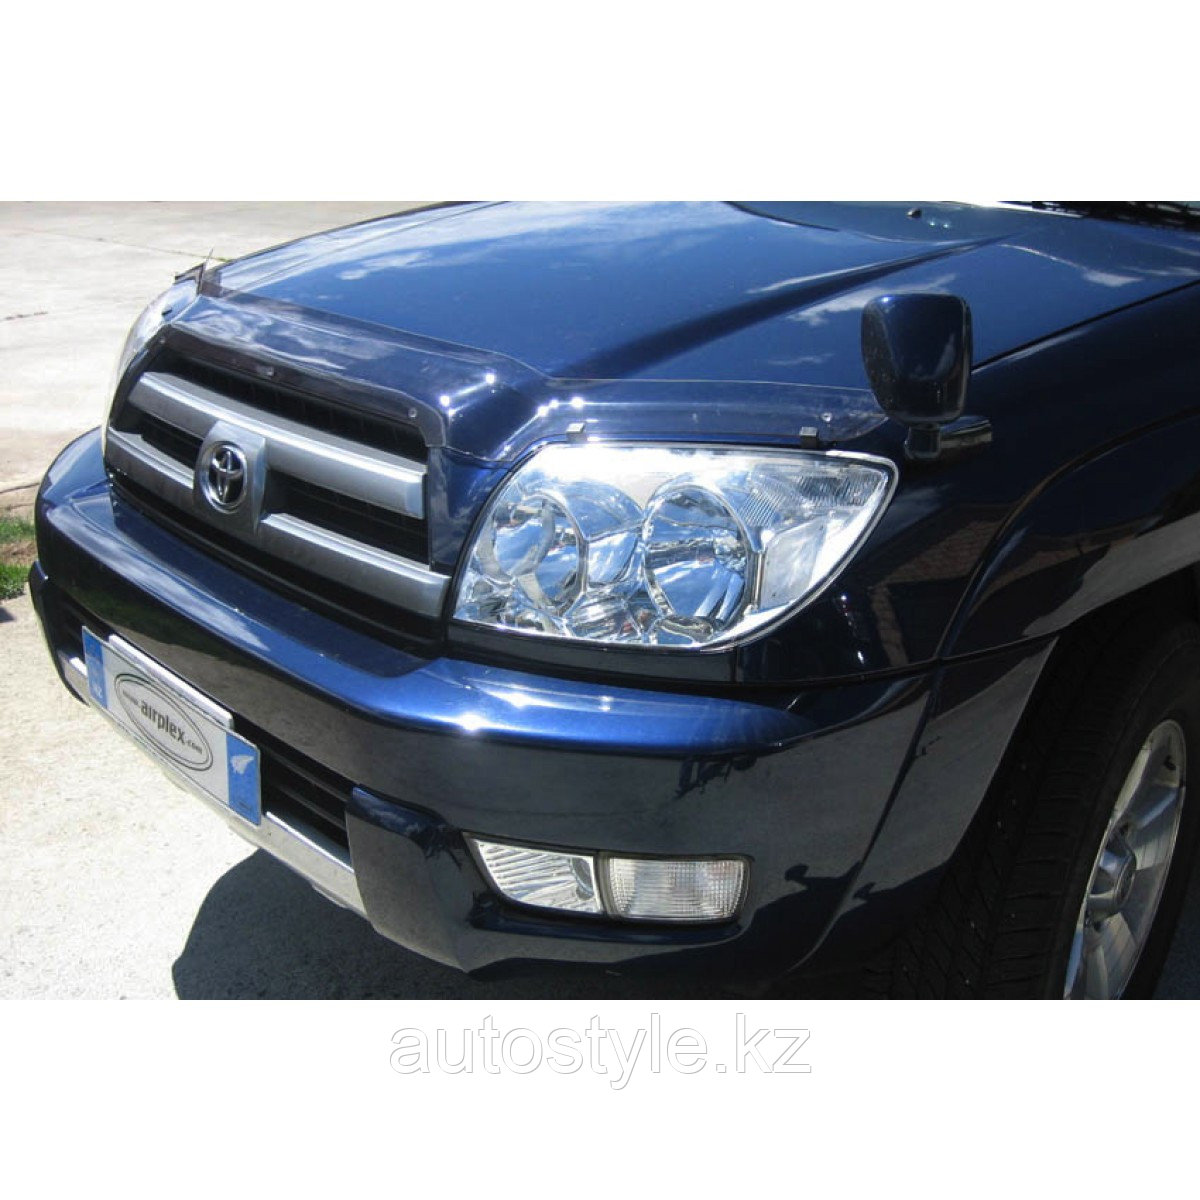 Защита фар Toyota HILUX 2011-15 (очки, прозрачные) AIRPLEX